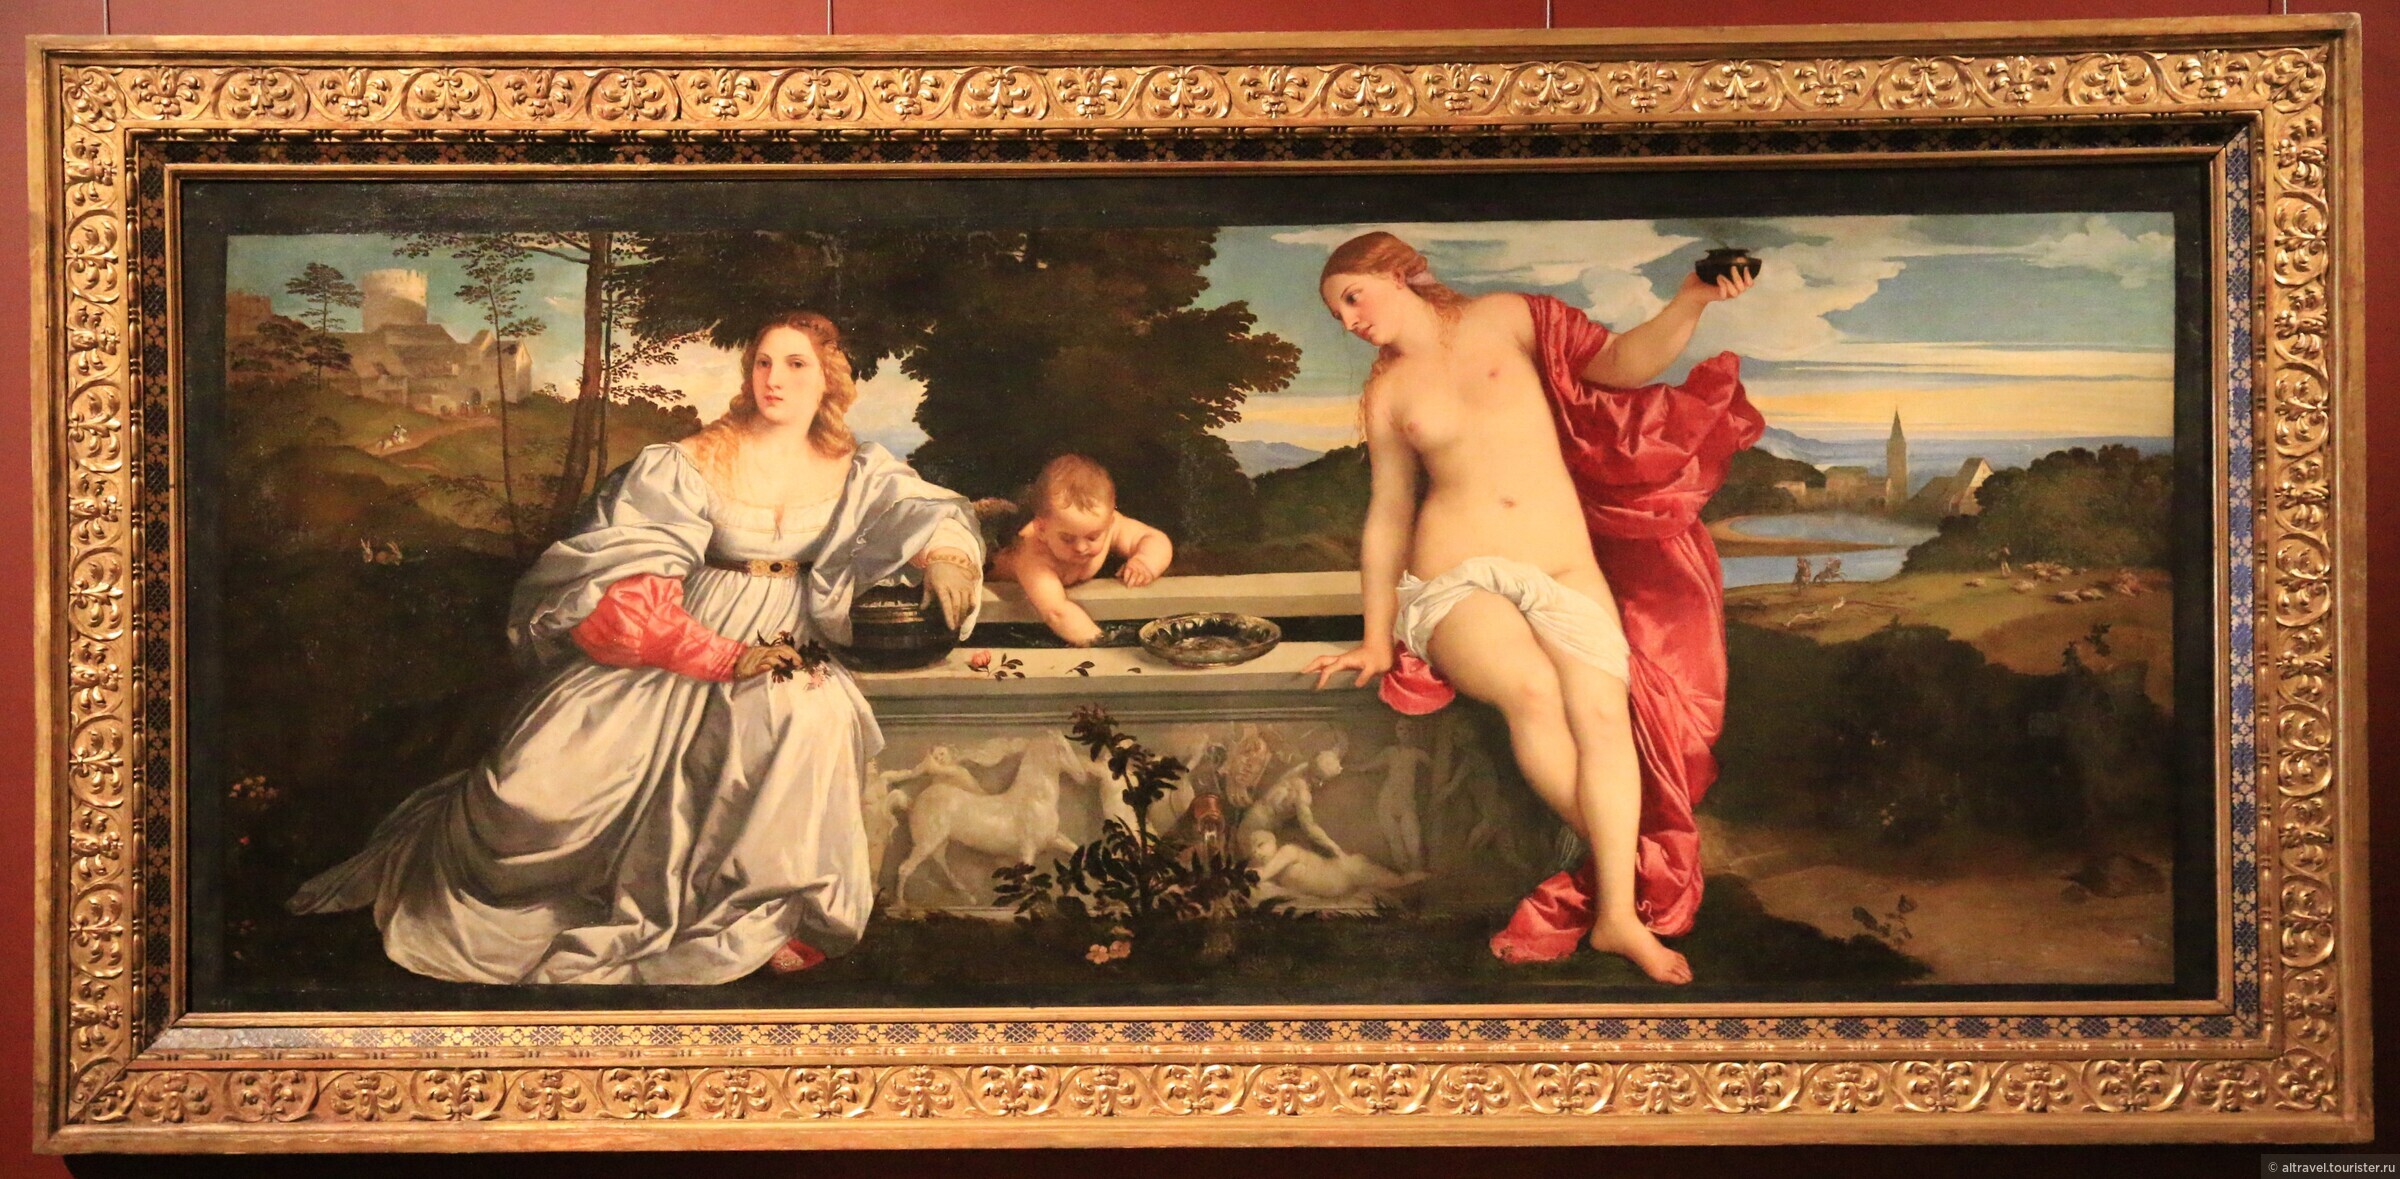 Любовь эпоху возрождения. Тициан любовь земная и любовь Небесная. Тициан Вечеллио любовь земная и Небесная. Тициан «любовь Небесная и земная» (1515—1516 гг.).. Картина Тициана любовь земная и Небесная.